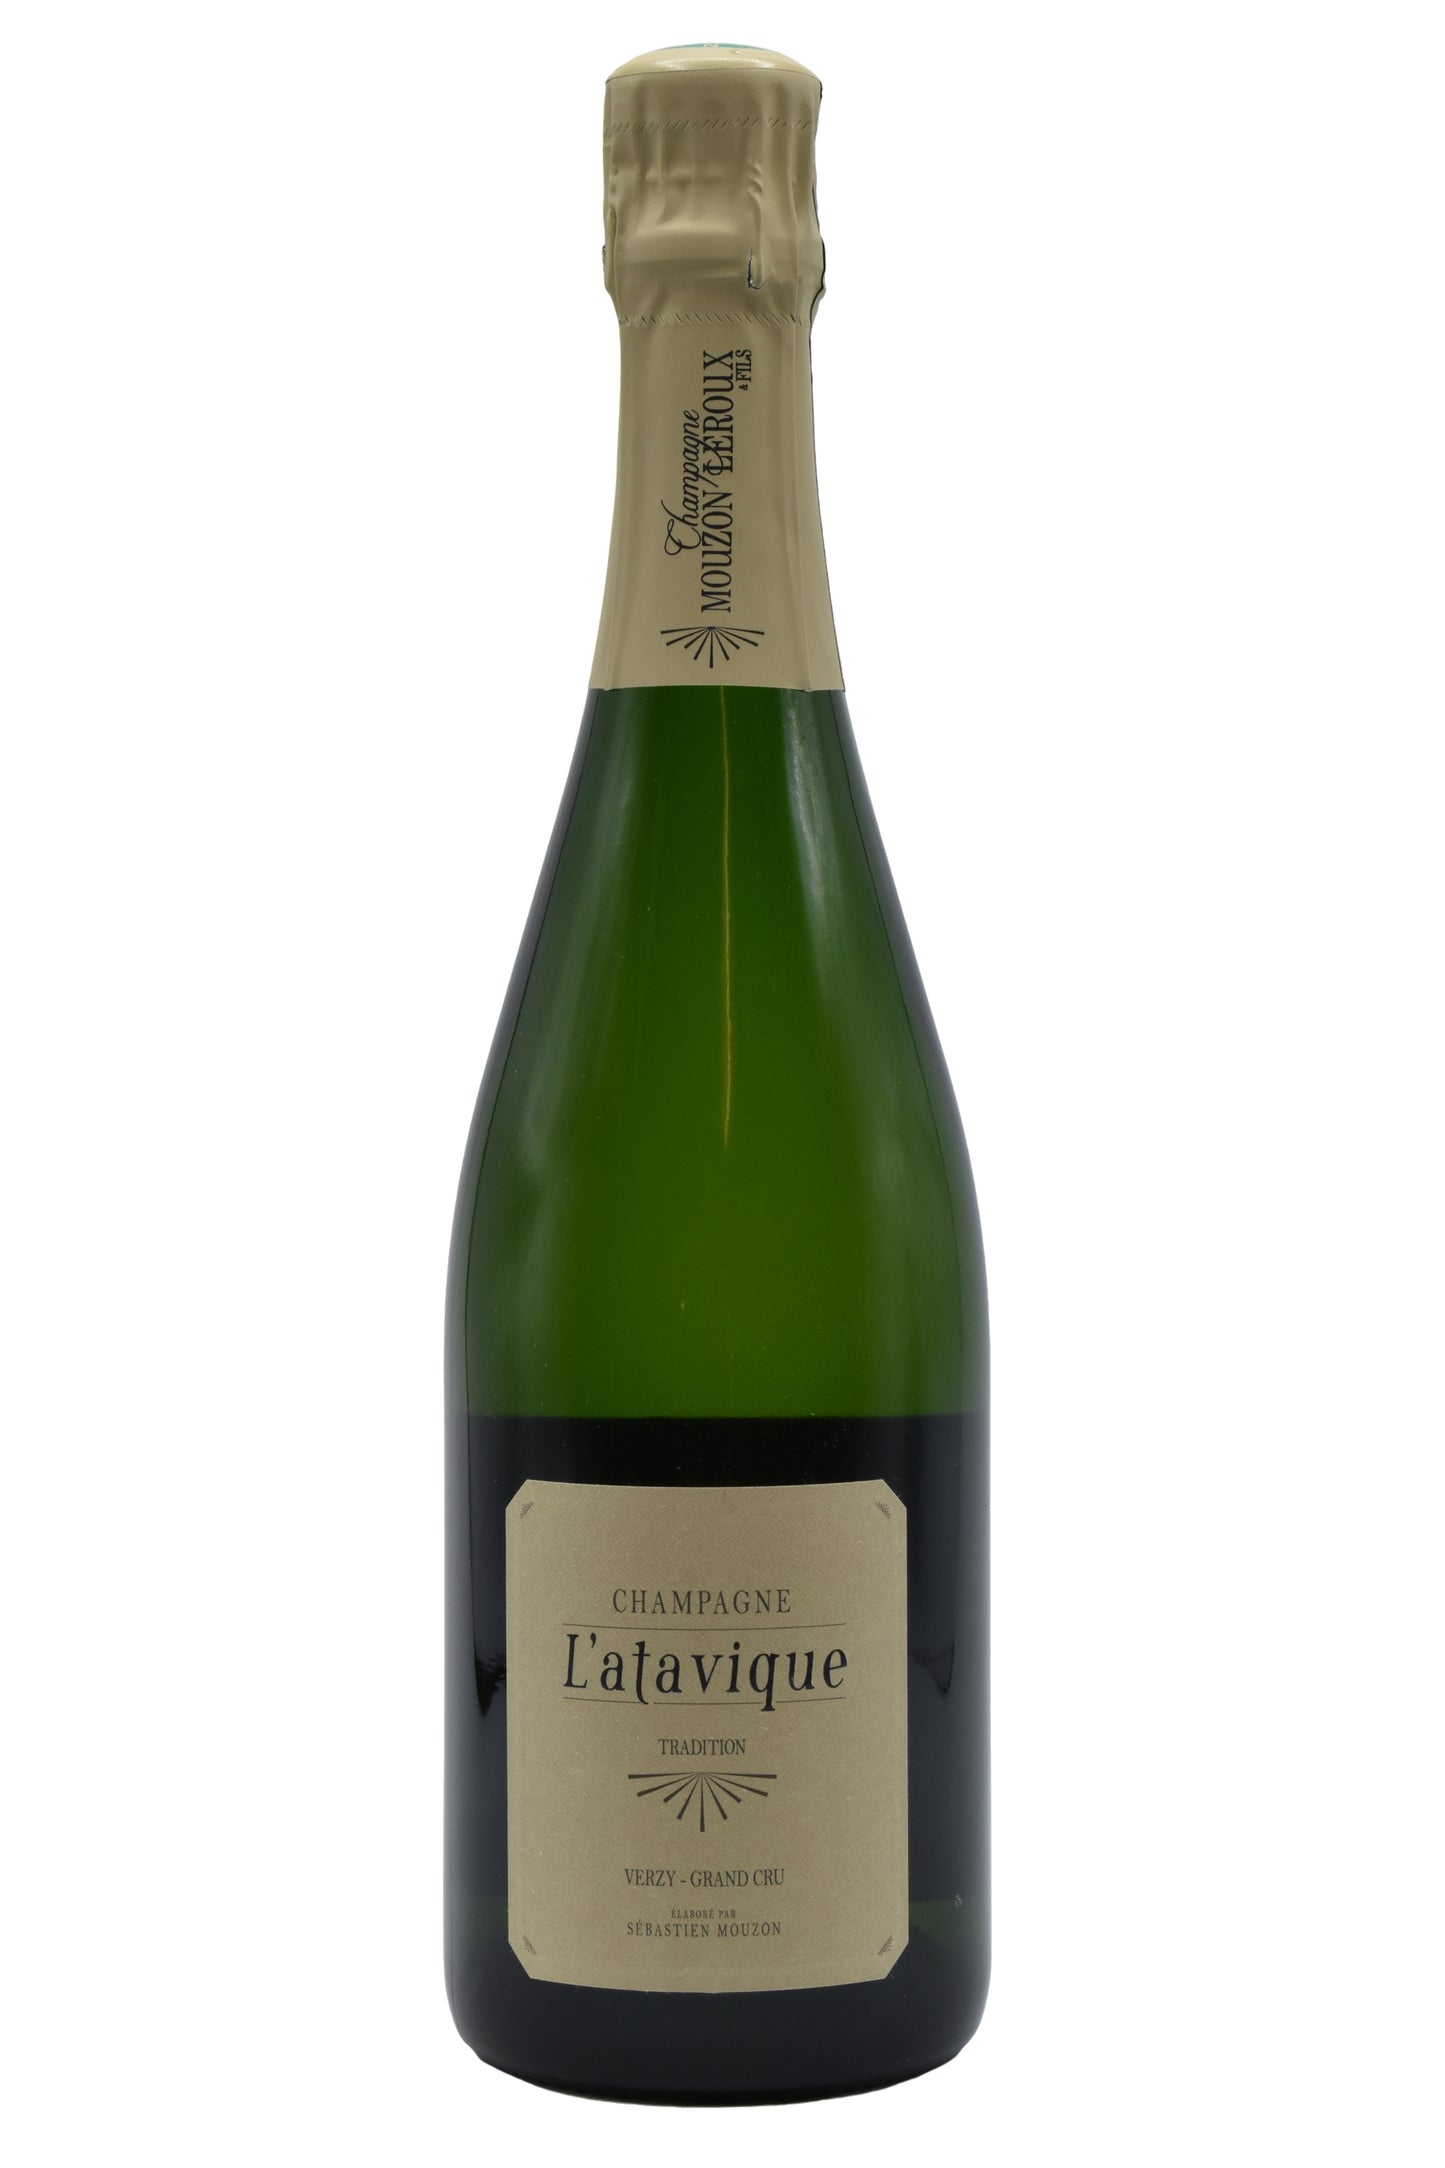 NV Mouzon-Leroux, Champagne L'Atavique Tradition 750ml - Walker Wine Co.